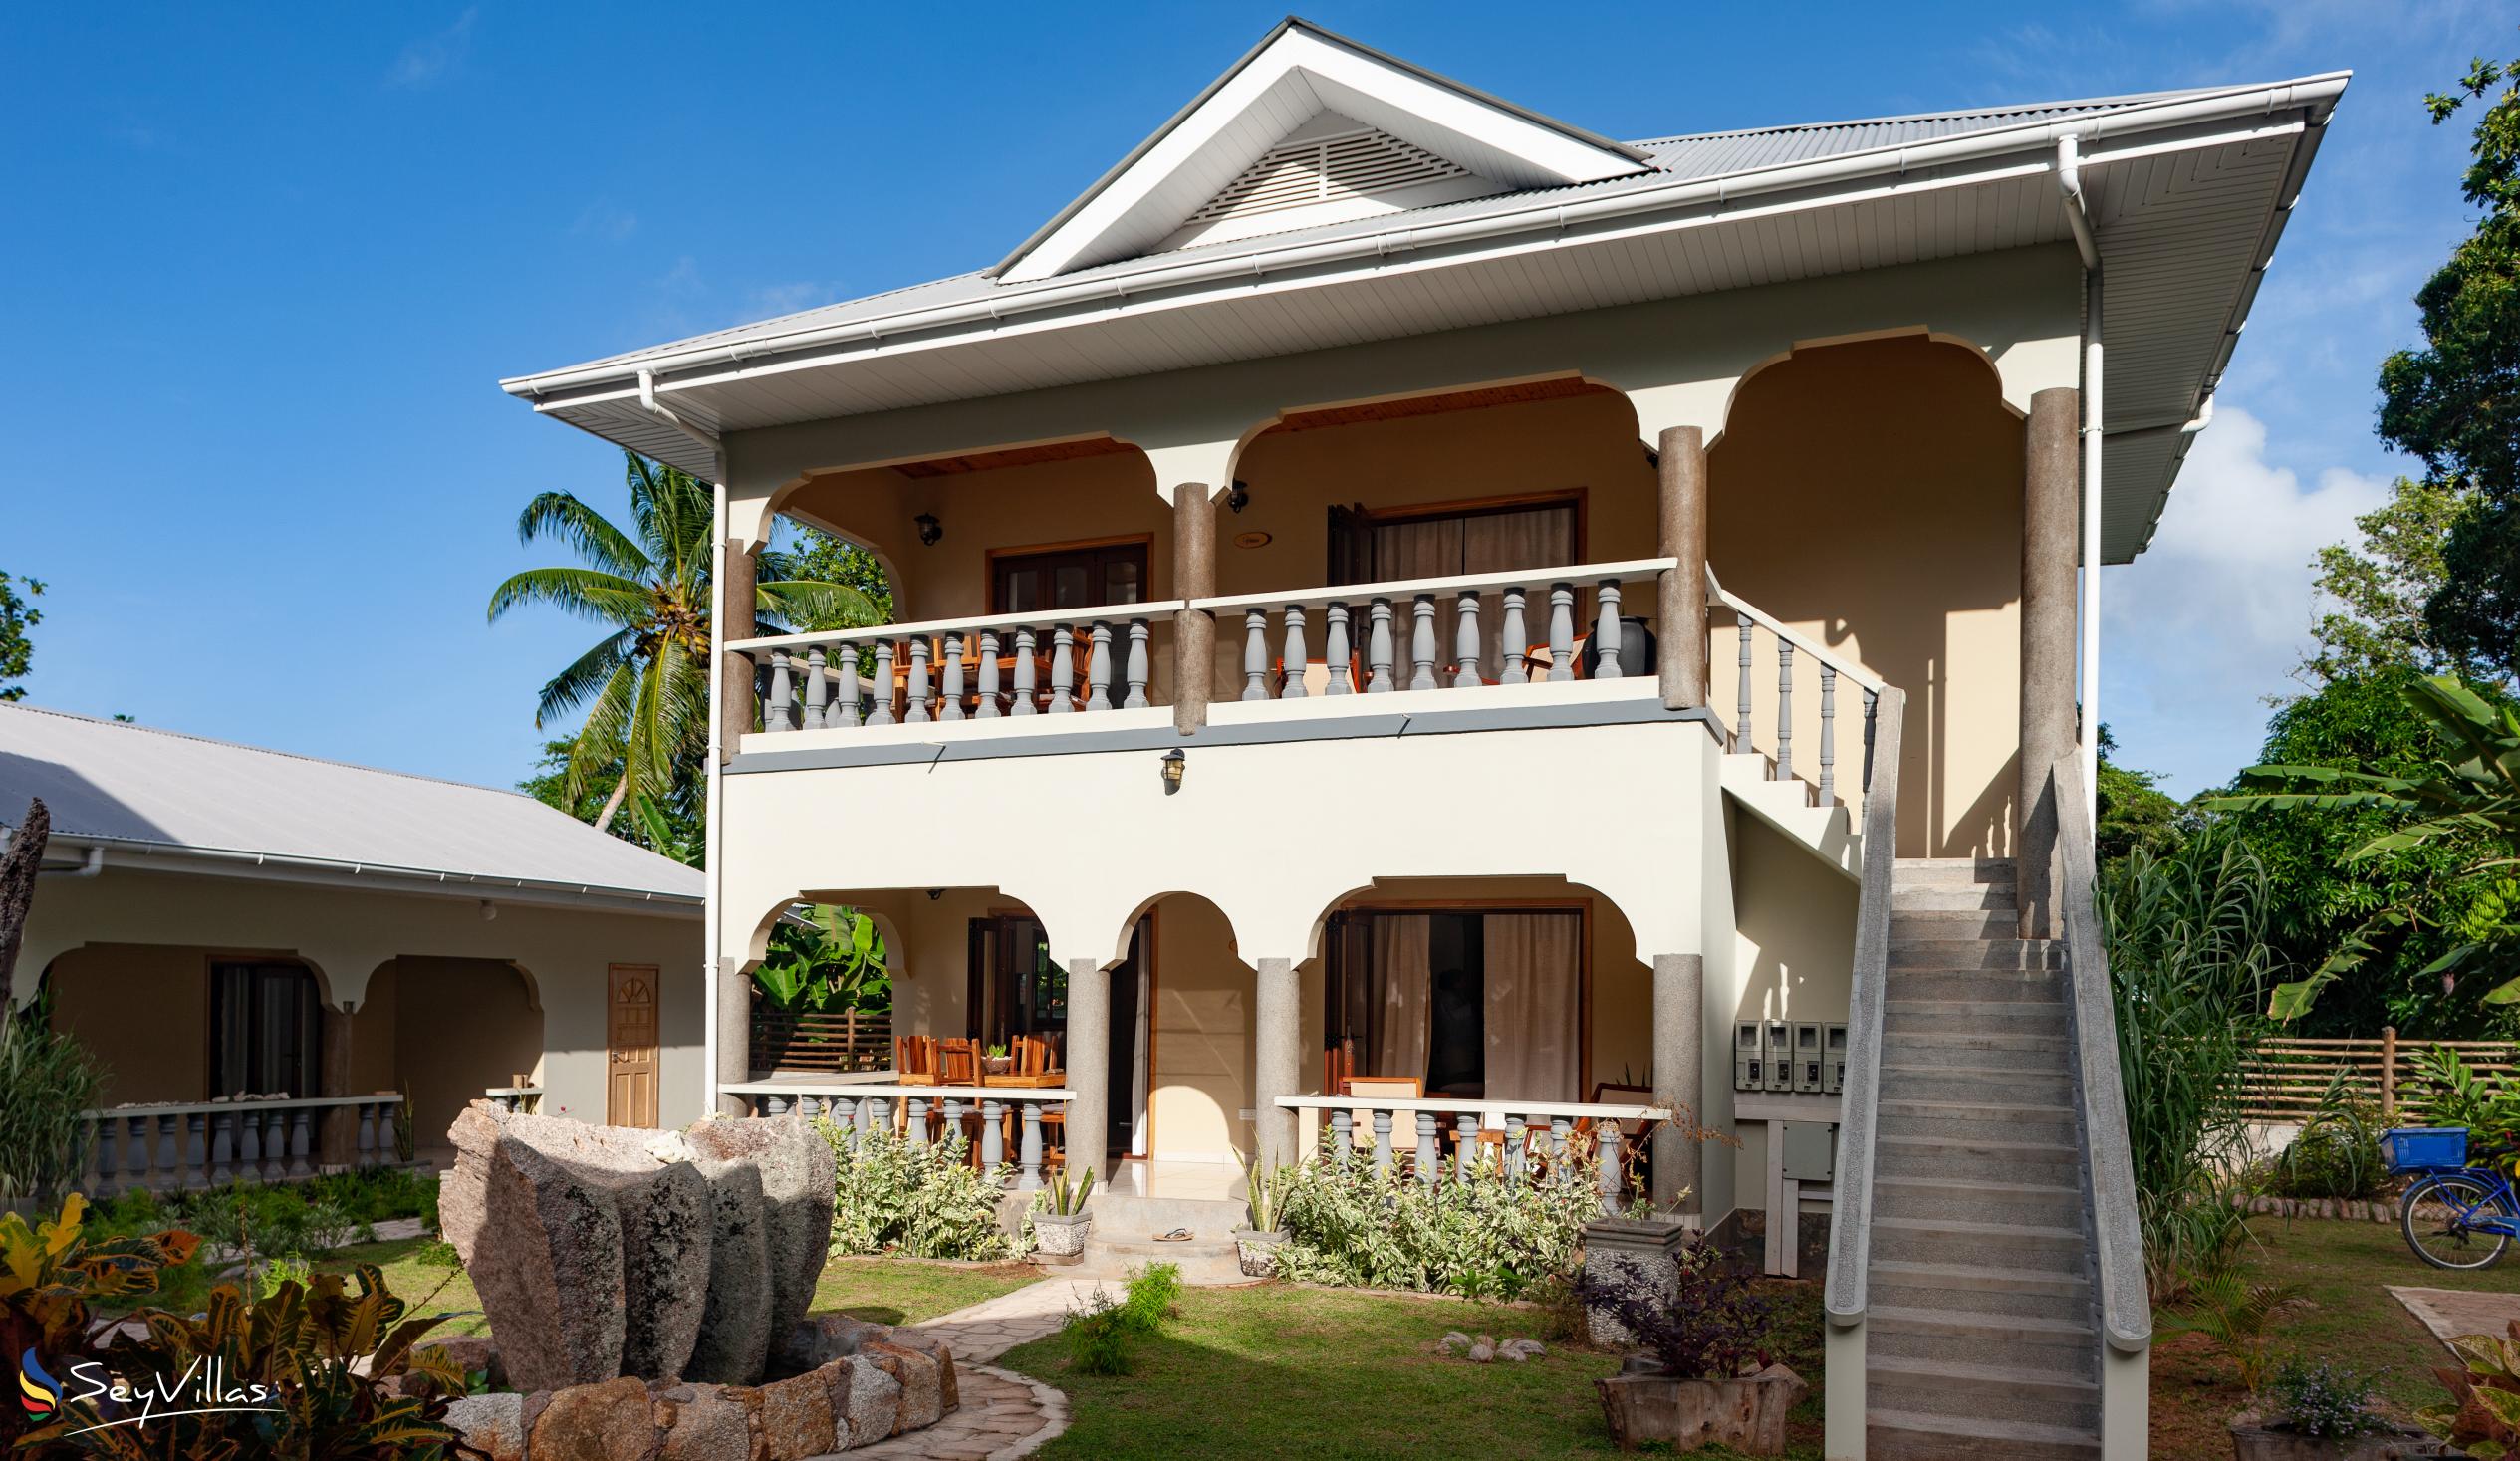 Foto 9: Maison Ed-Elle - Extérieur - La Digue (Seychelles)